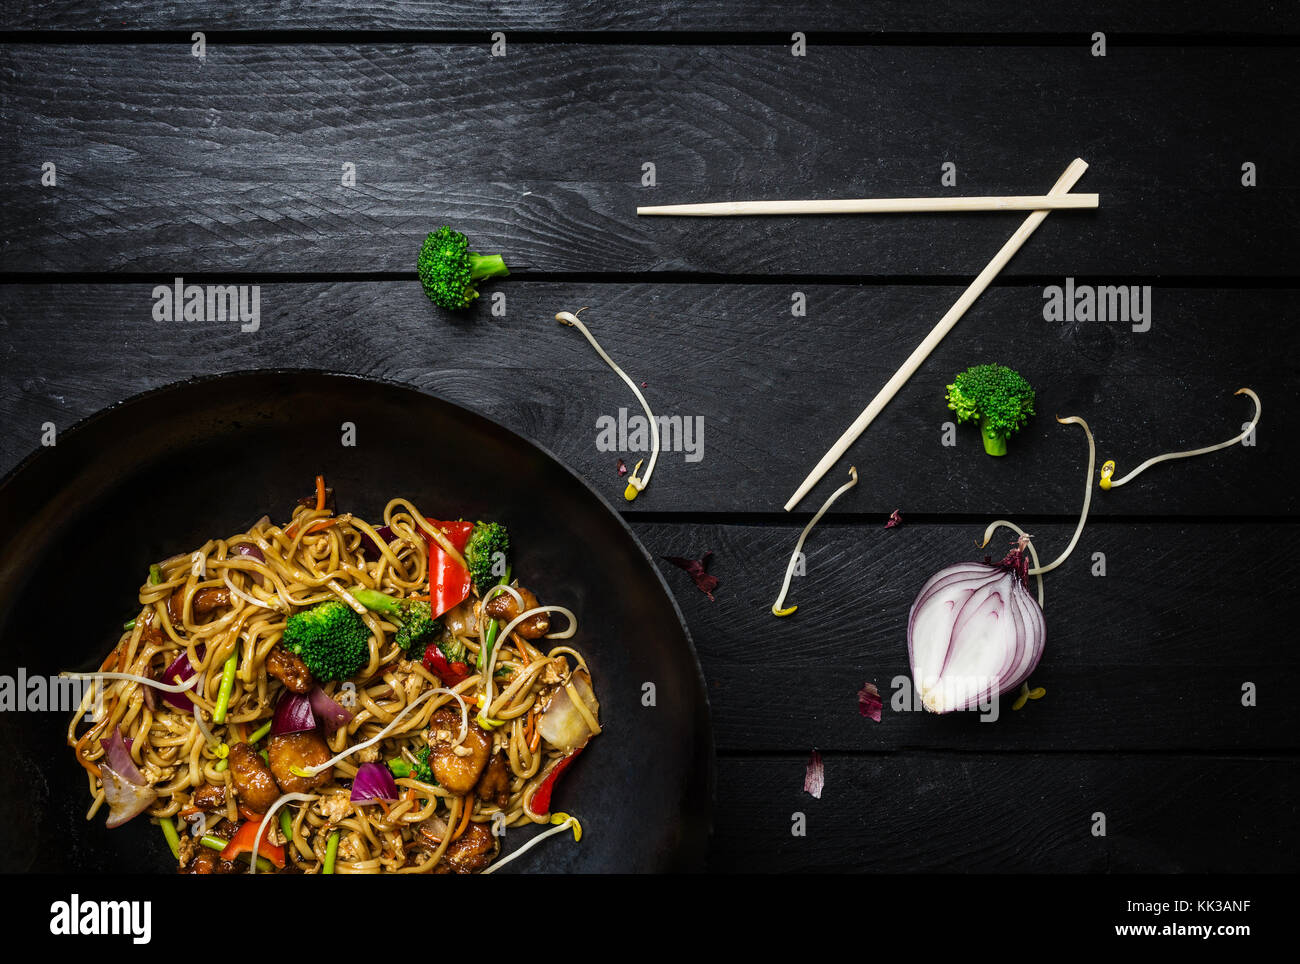 Udon nouilles sauté au poulet et légumes au wok casserole sur fond de bois noir avec des baguettes. Vue de dessus Banque D'Images